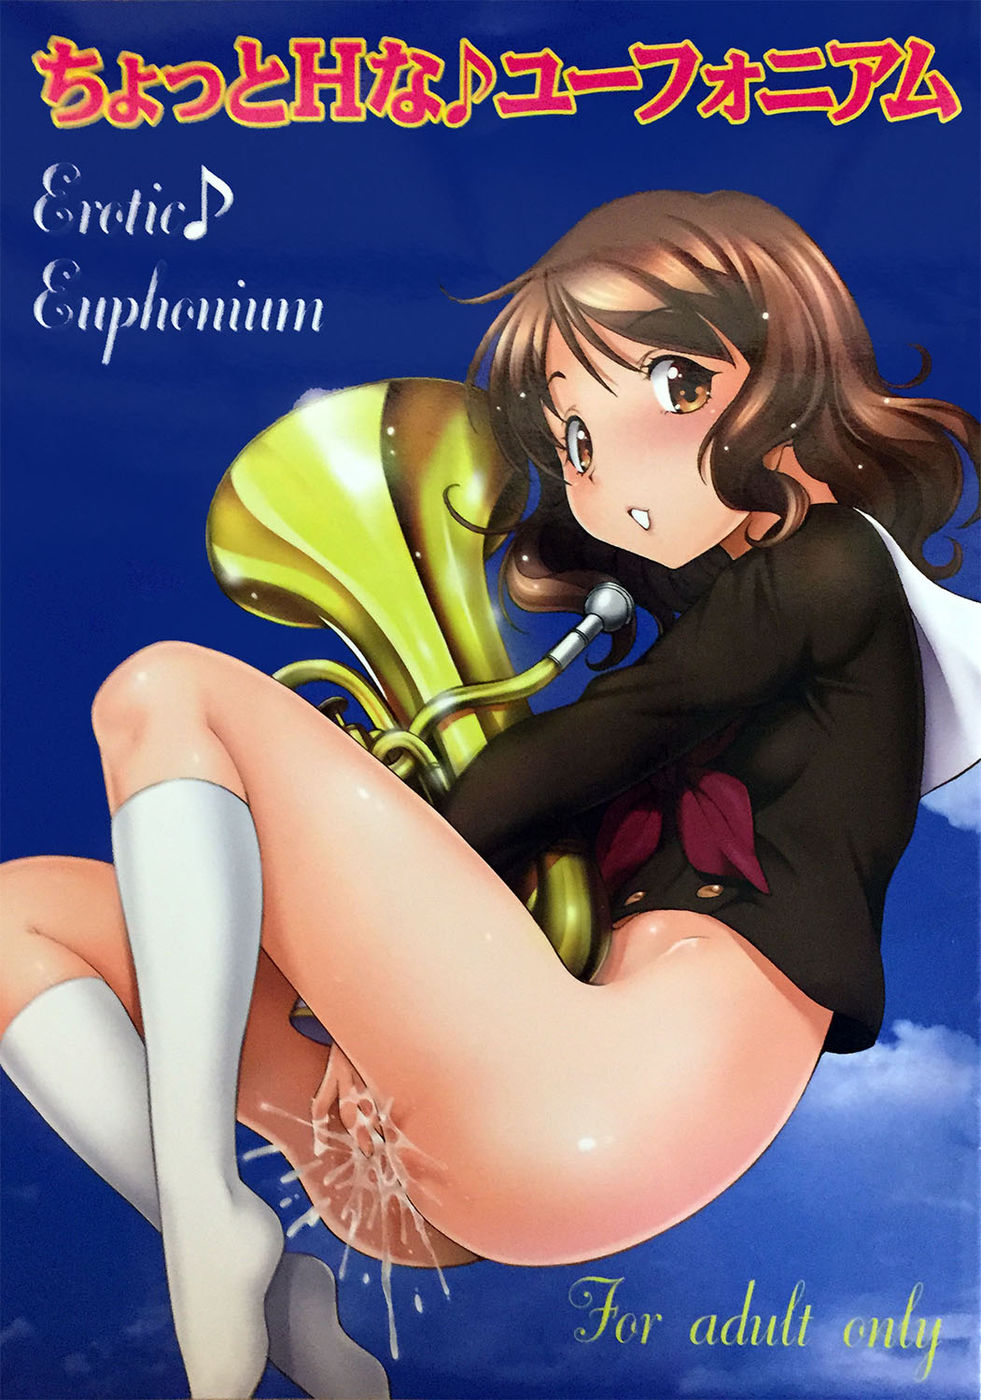 Hentai Manga Comic-Erotic Euphonium-Read-1